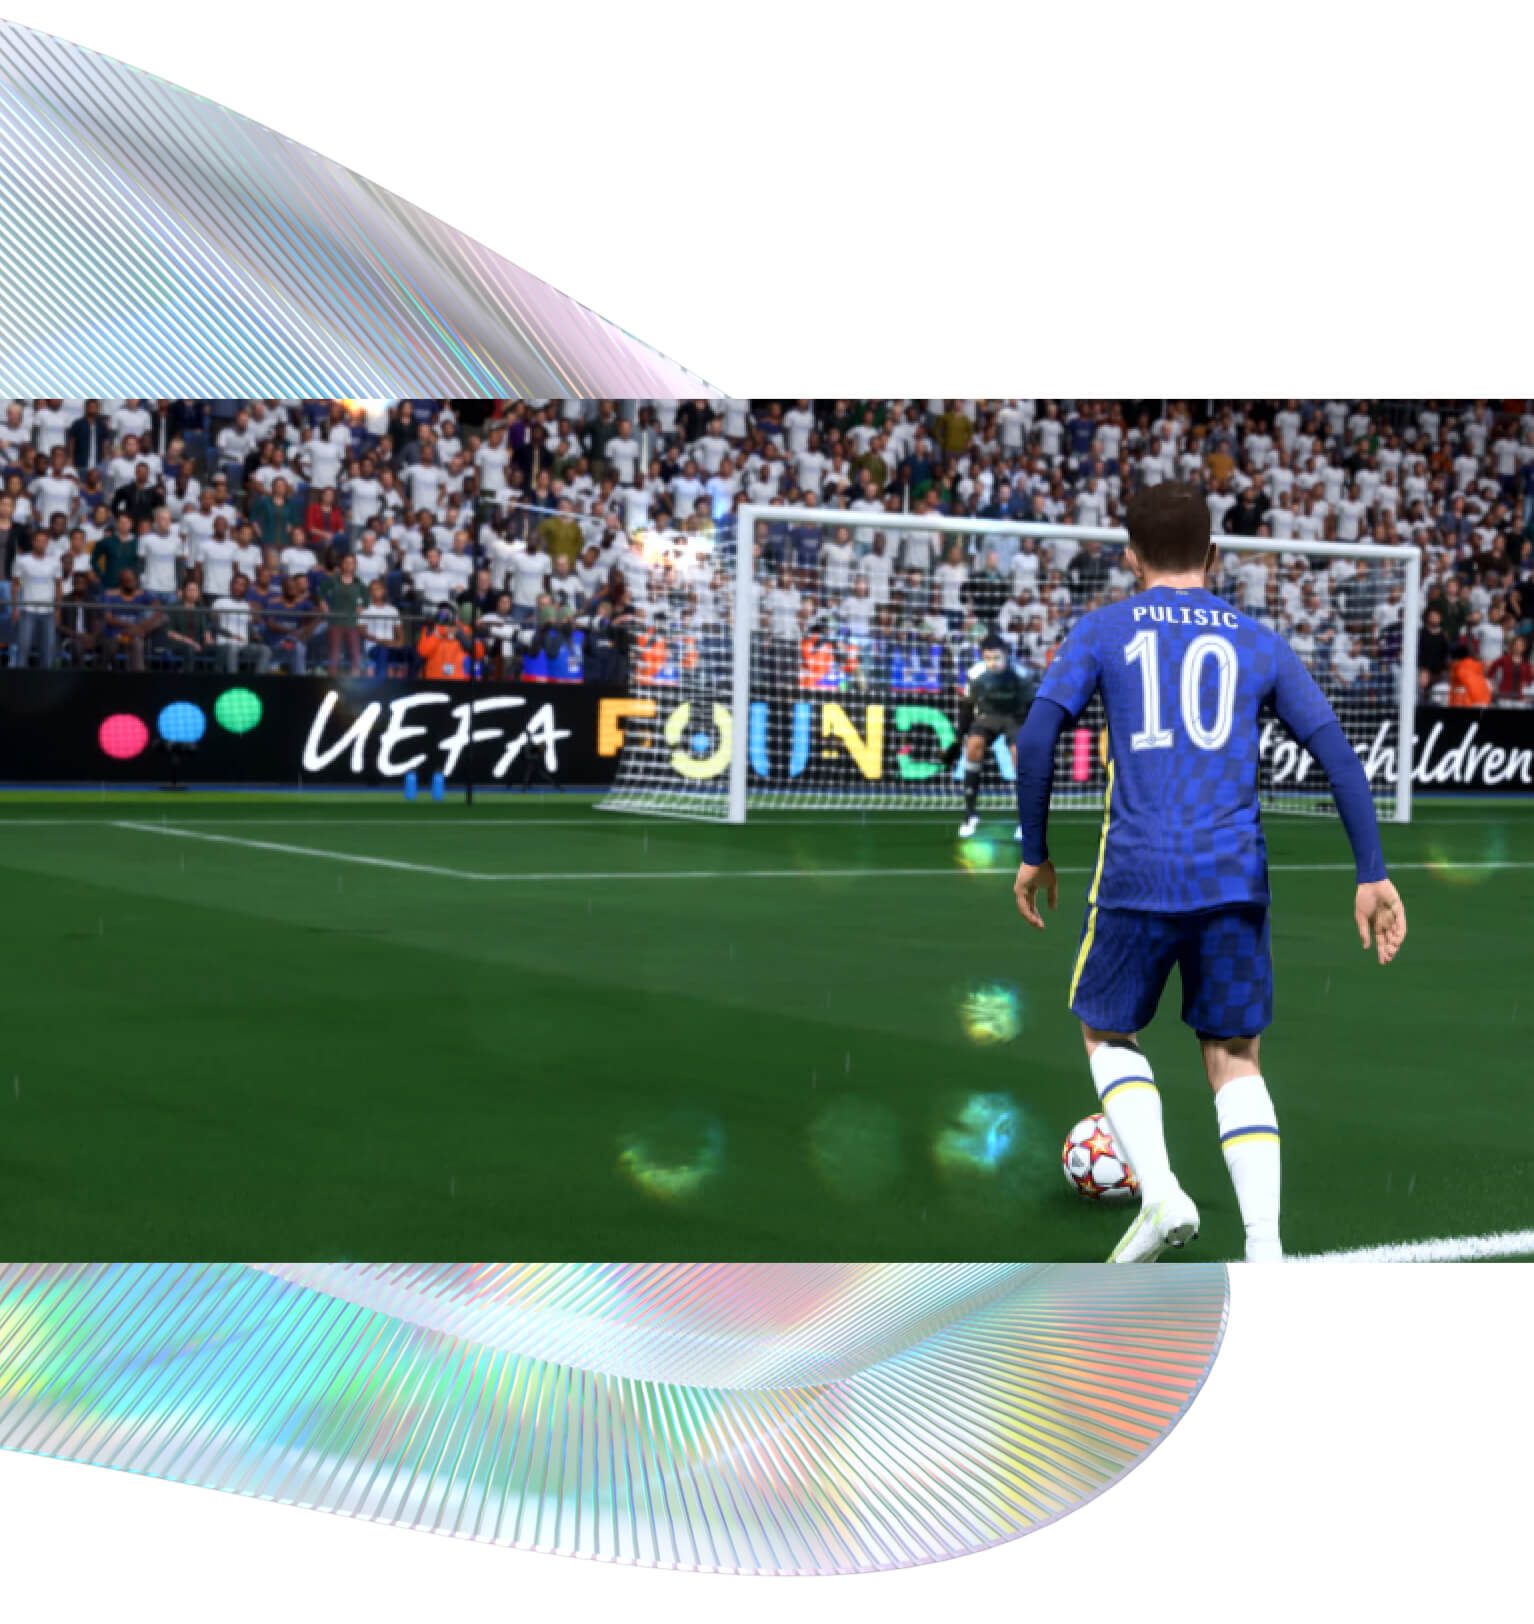 EA anuncia FIFA 22 com tecnologia Hypermotion para realismo